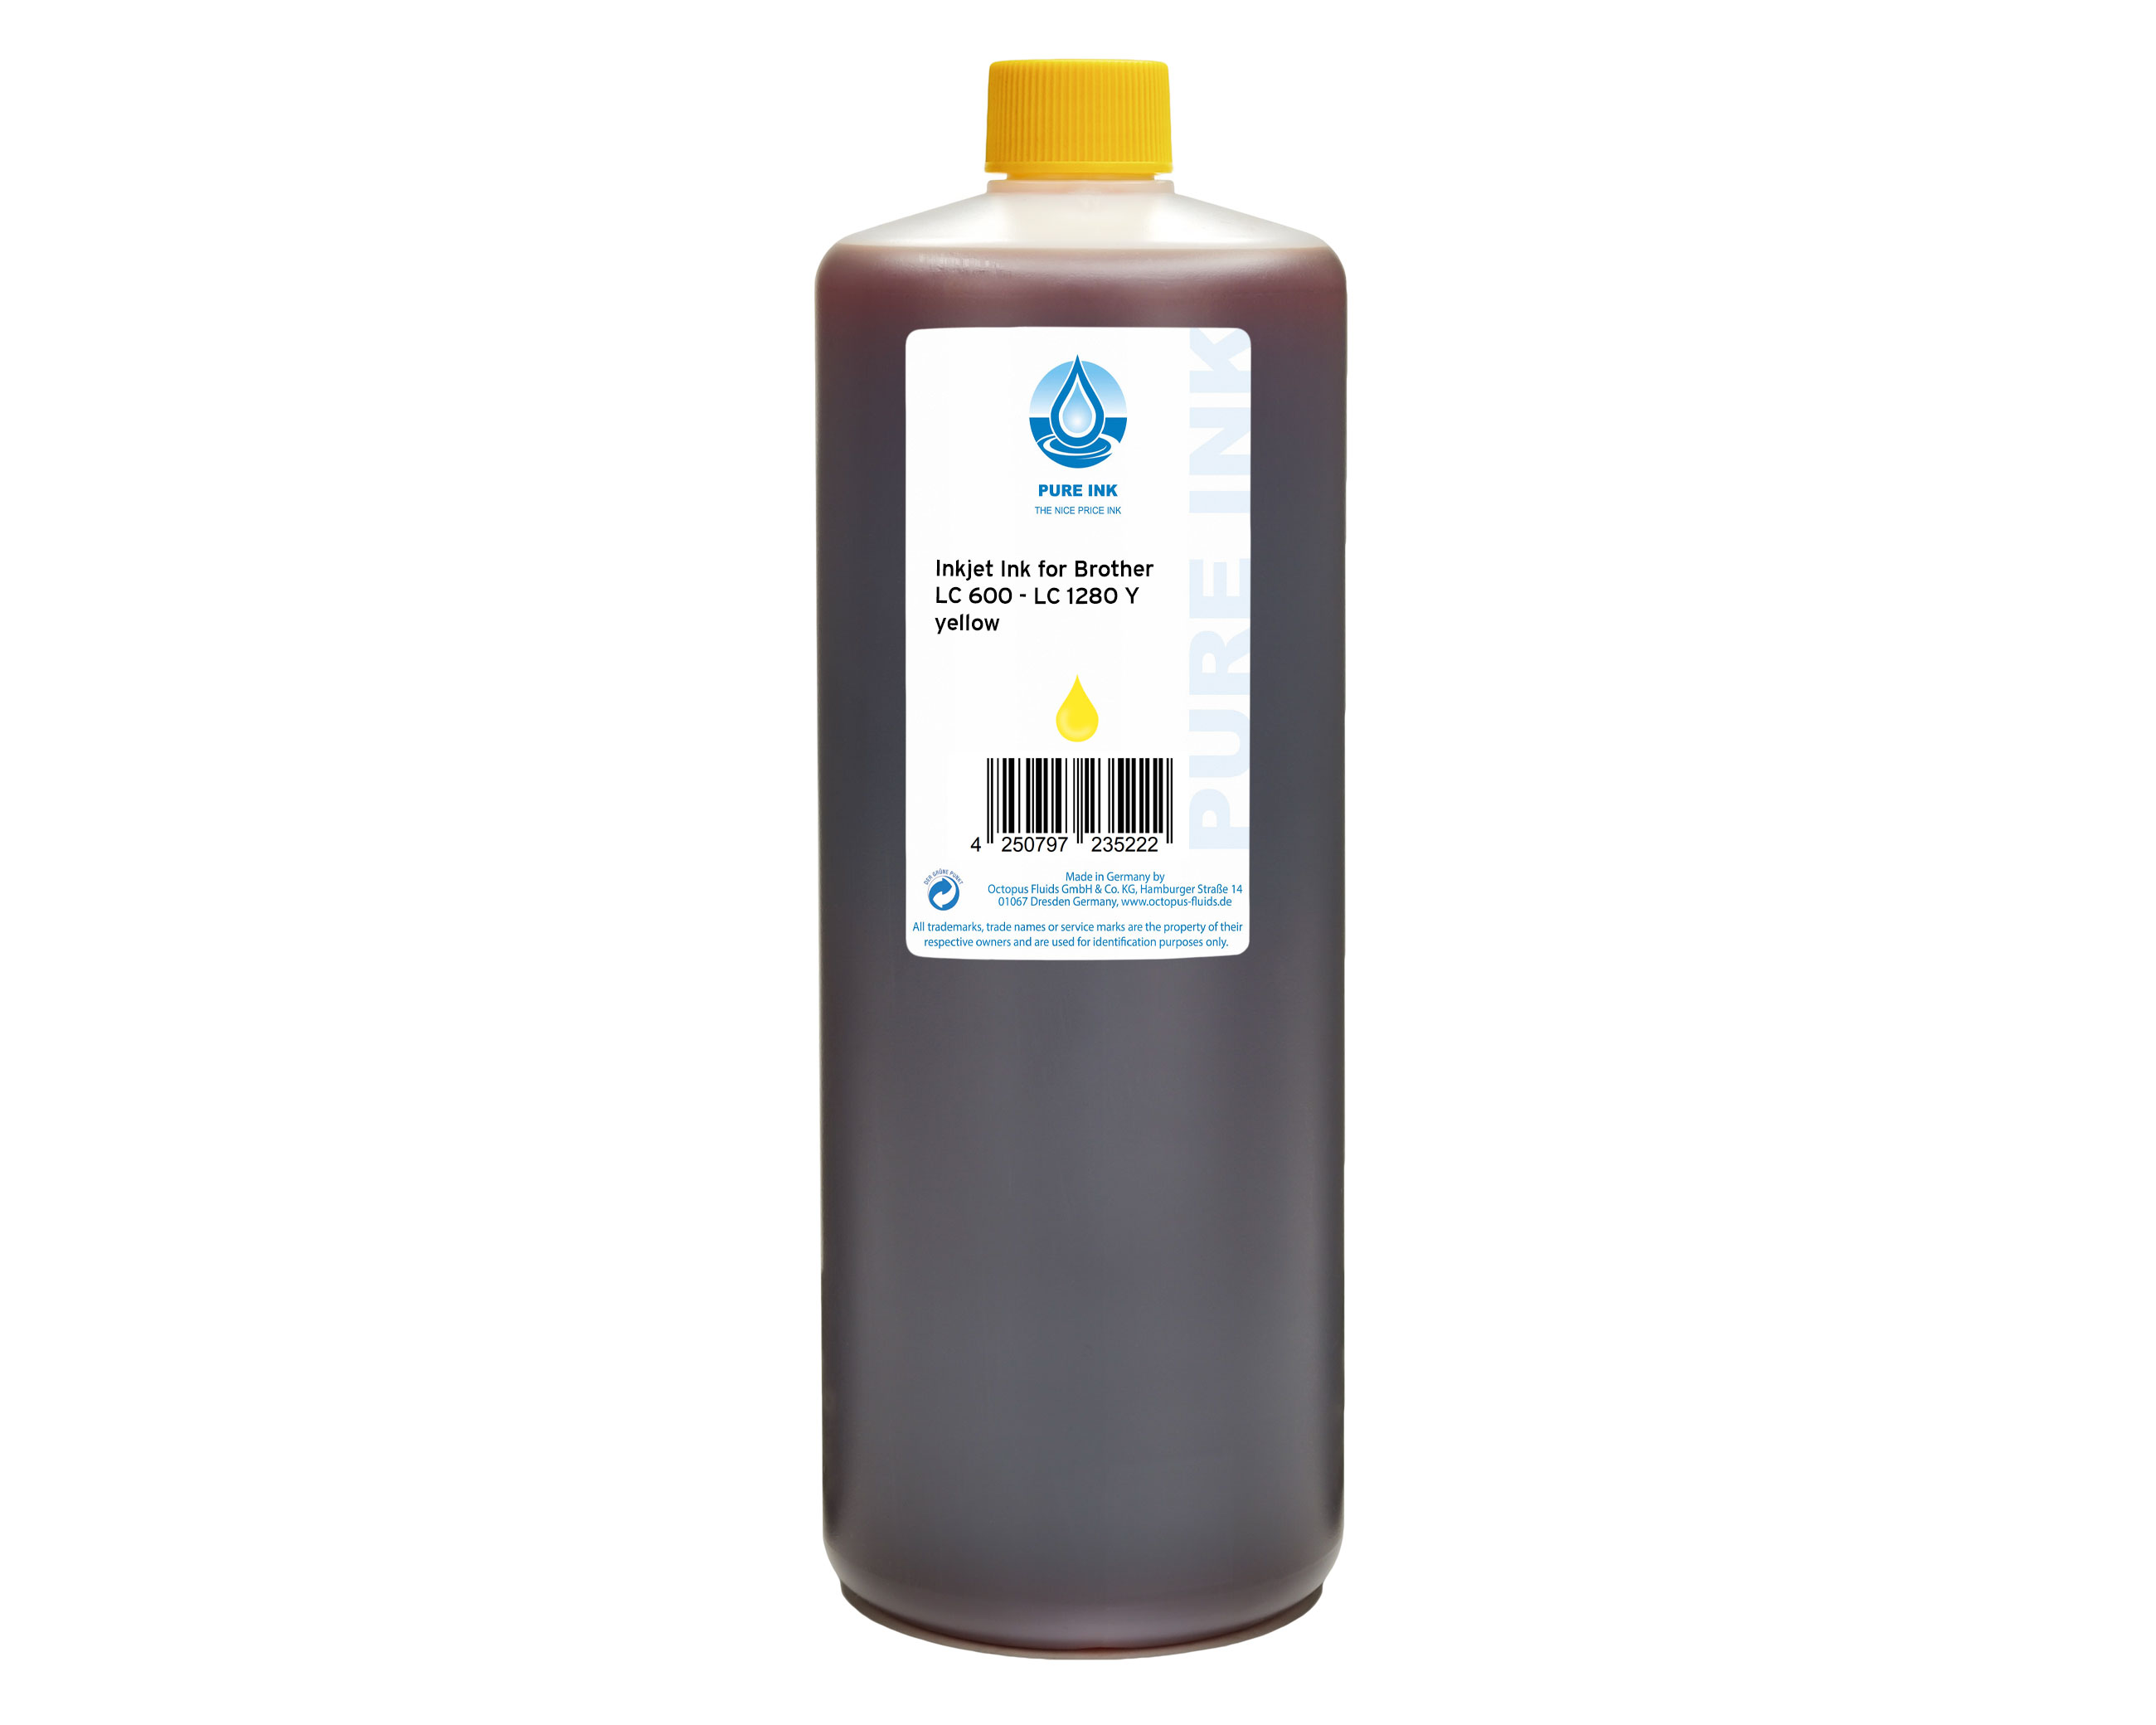 Inchiostro PURE INK compatibile con Brother LC-600, LC-1280 giallo